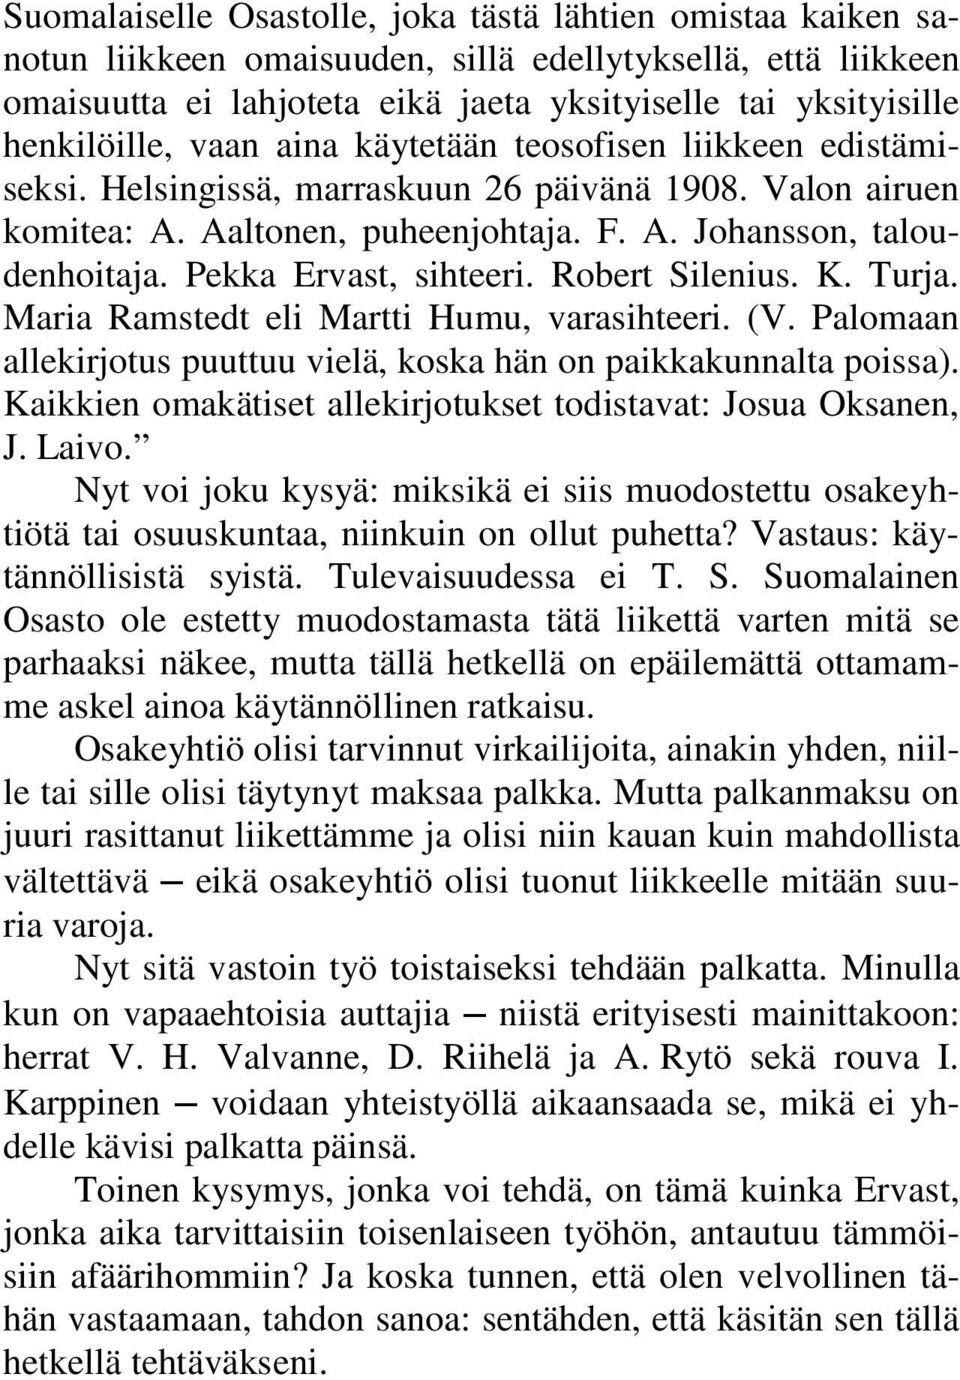 Pekka Ervast, sihteeri. Robert Silenius. K. Turja. Maria Ramstedt eli Martti Humu, varasihteeri. (V. Palomaan allekirjotus puuttuu vielä, koska hän on paikkakunnalta poissa).